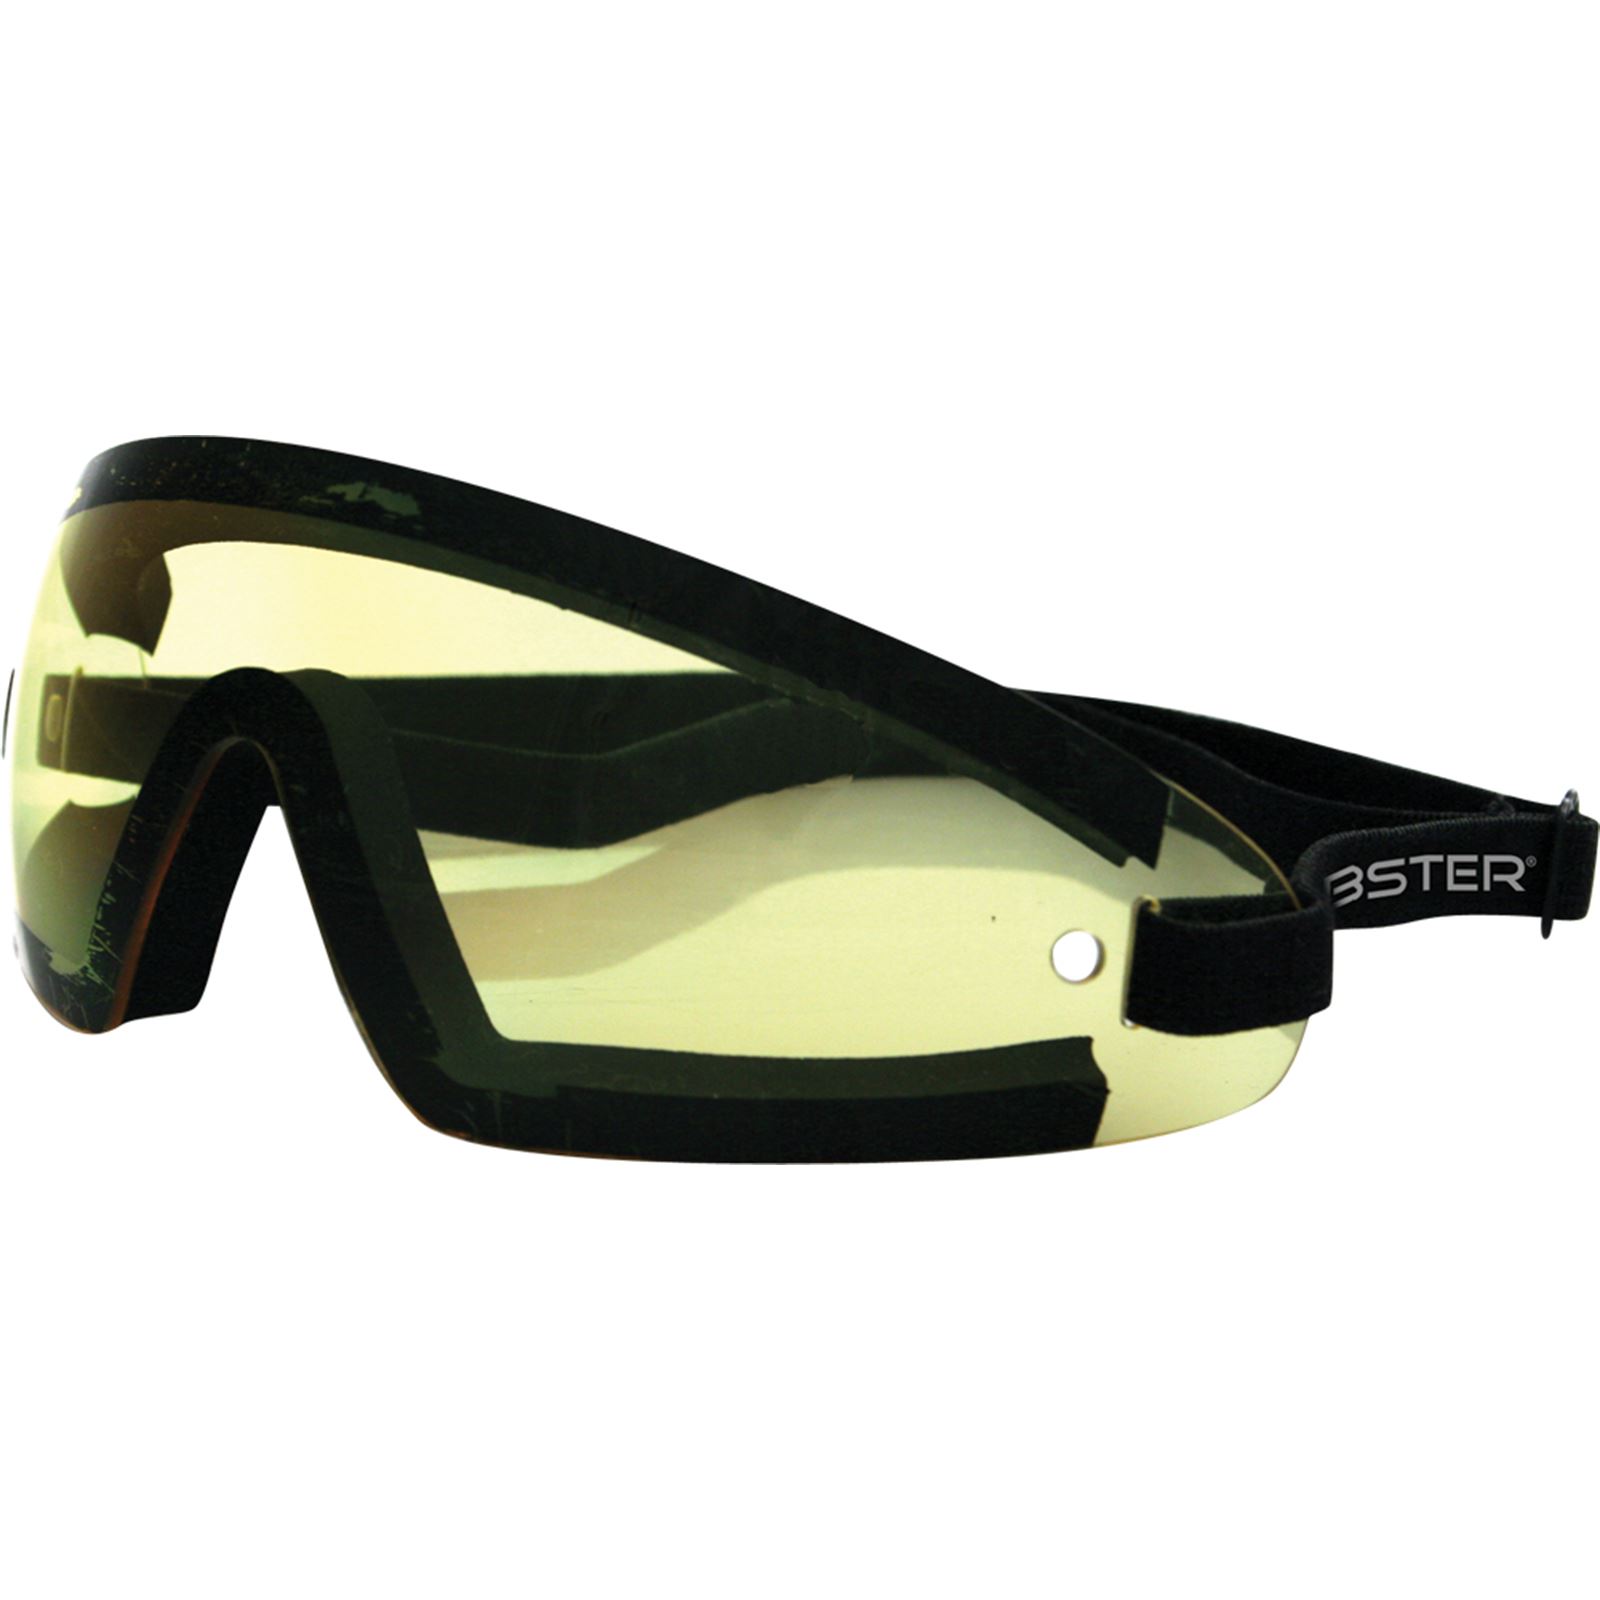 Yellow Polarized Lens Wrap Around Type Sunglasses - Lanyard Ready - Simon  Brand | eBay